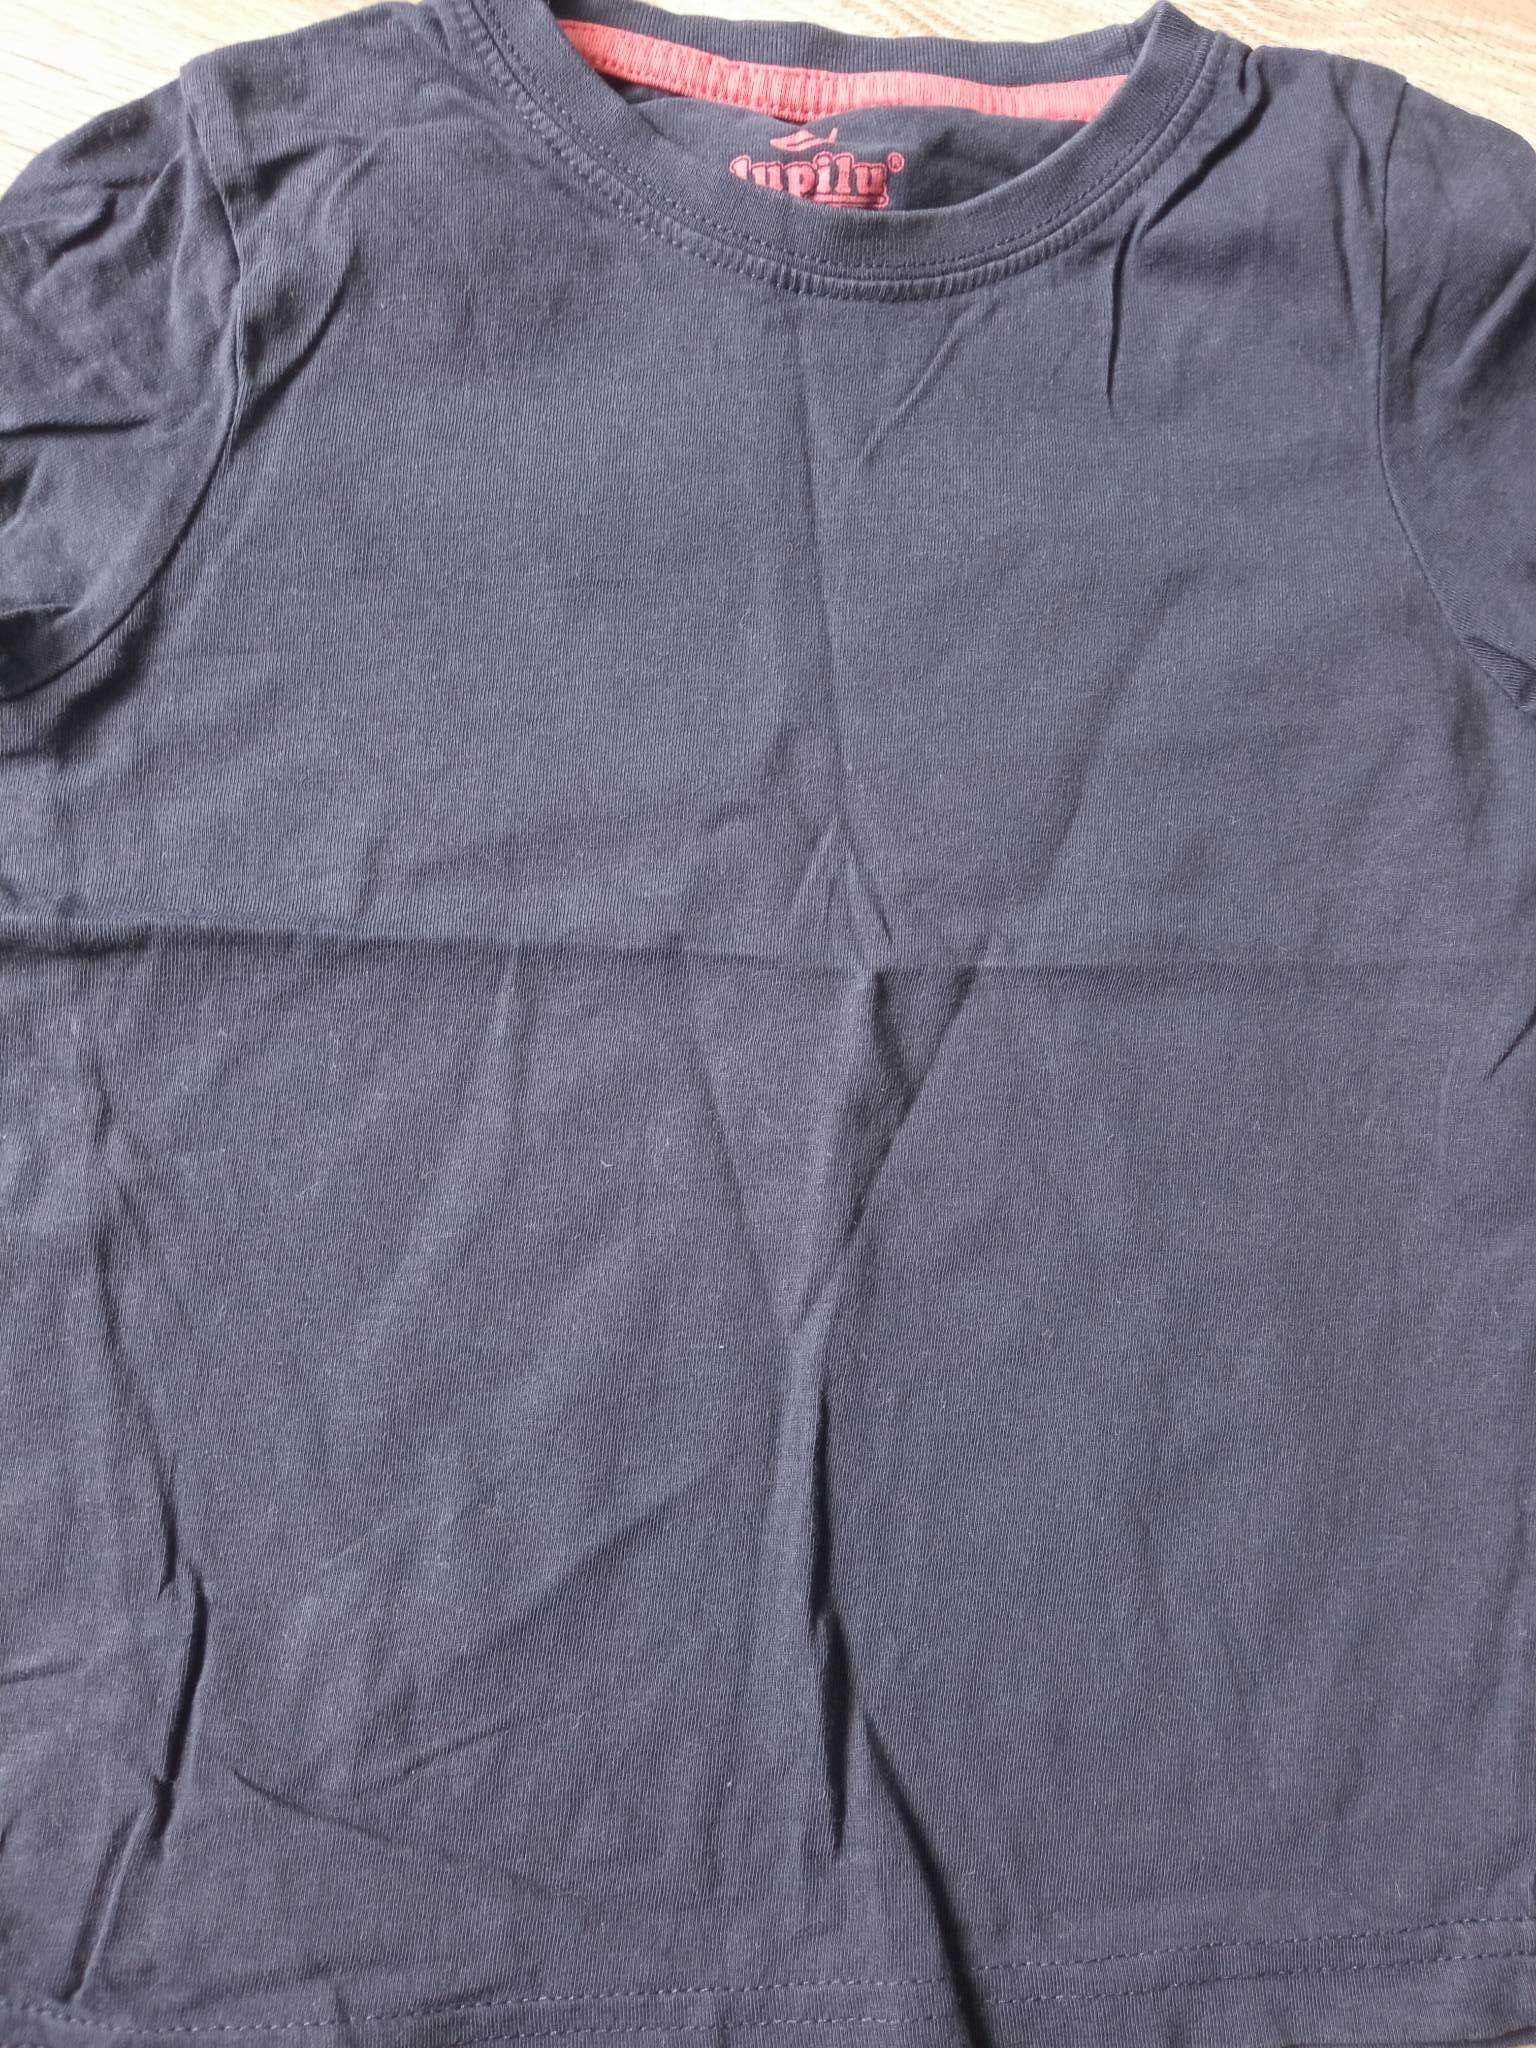 PAKA zestaw koszulki z krótkim rękawem lupilu 98/104 - 3szt